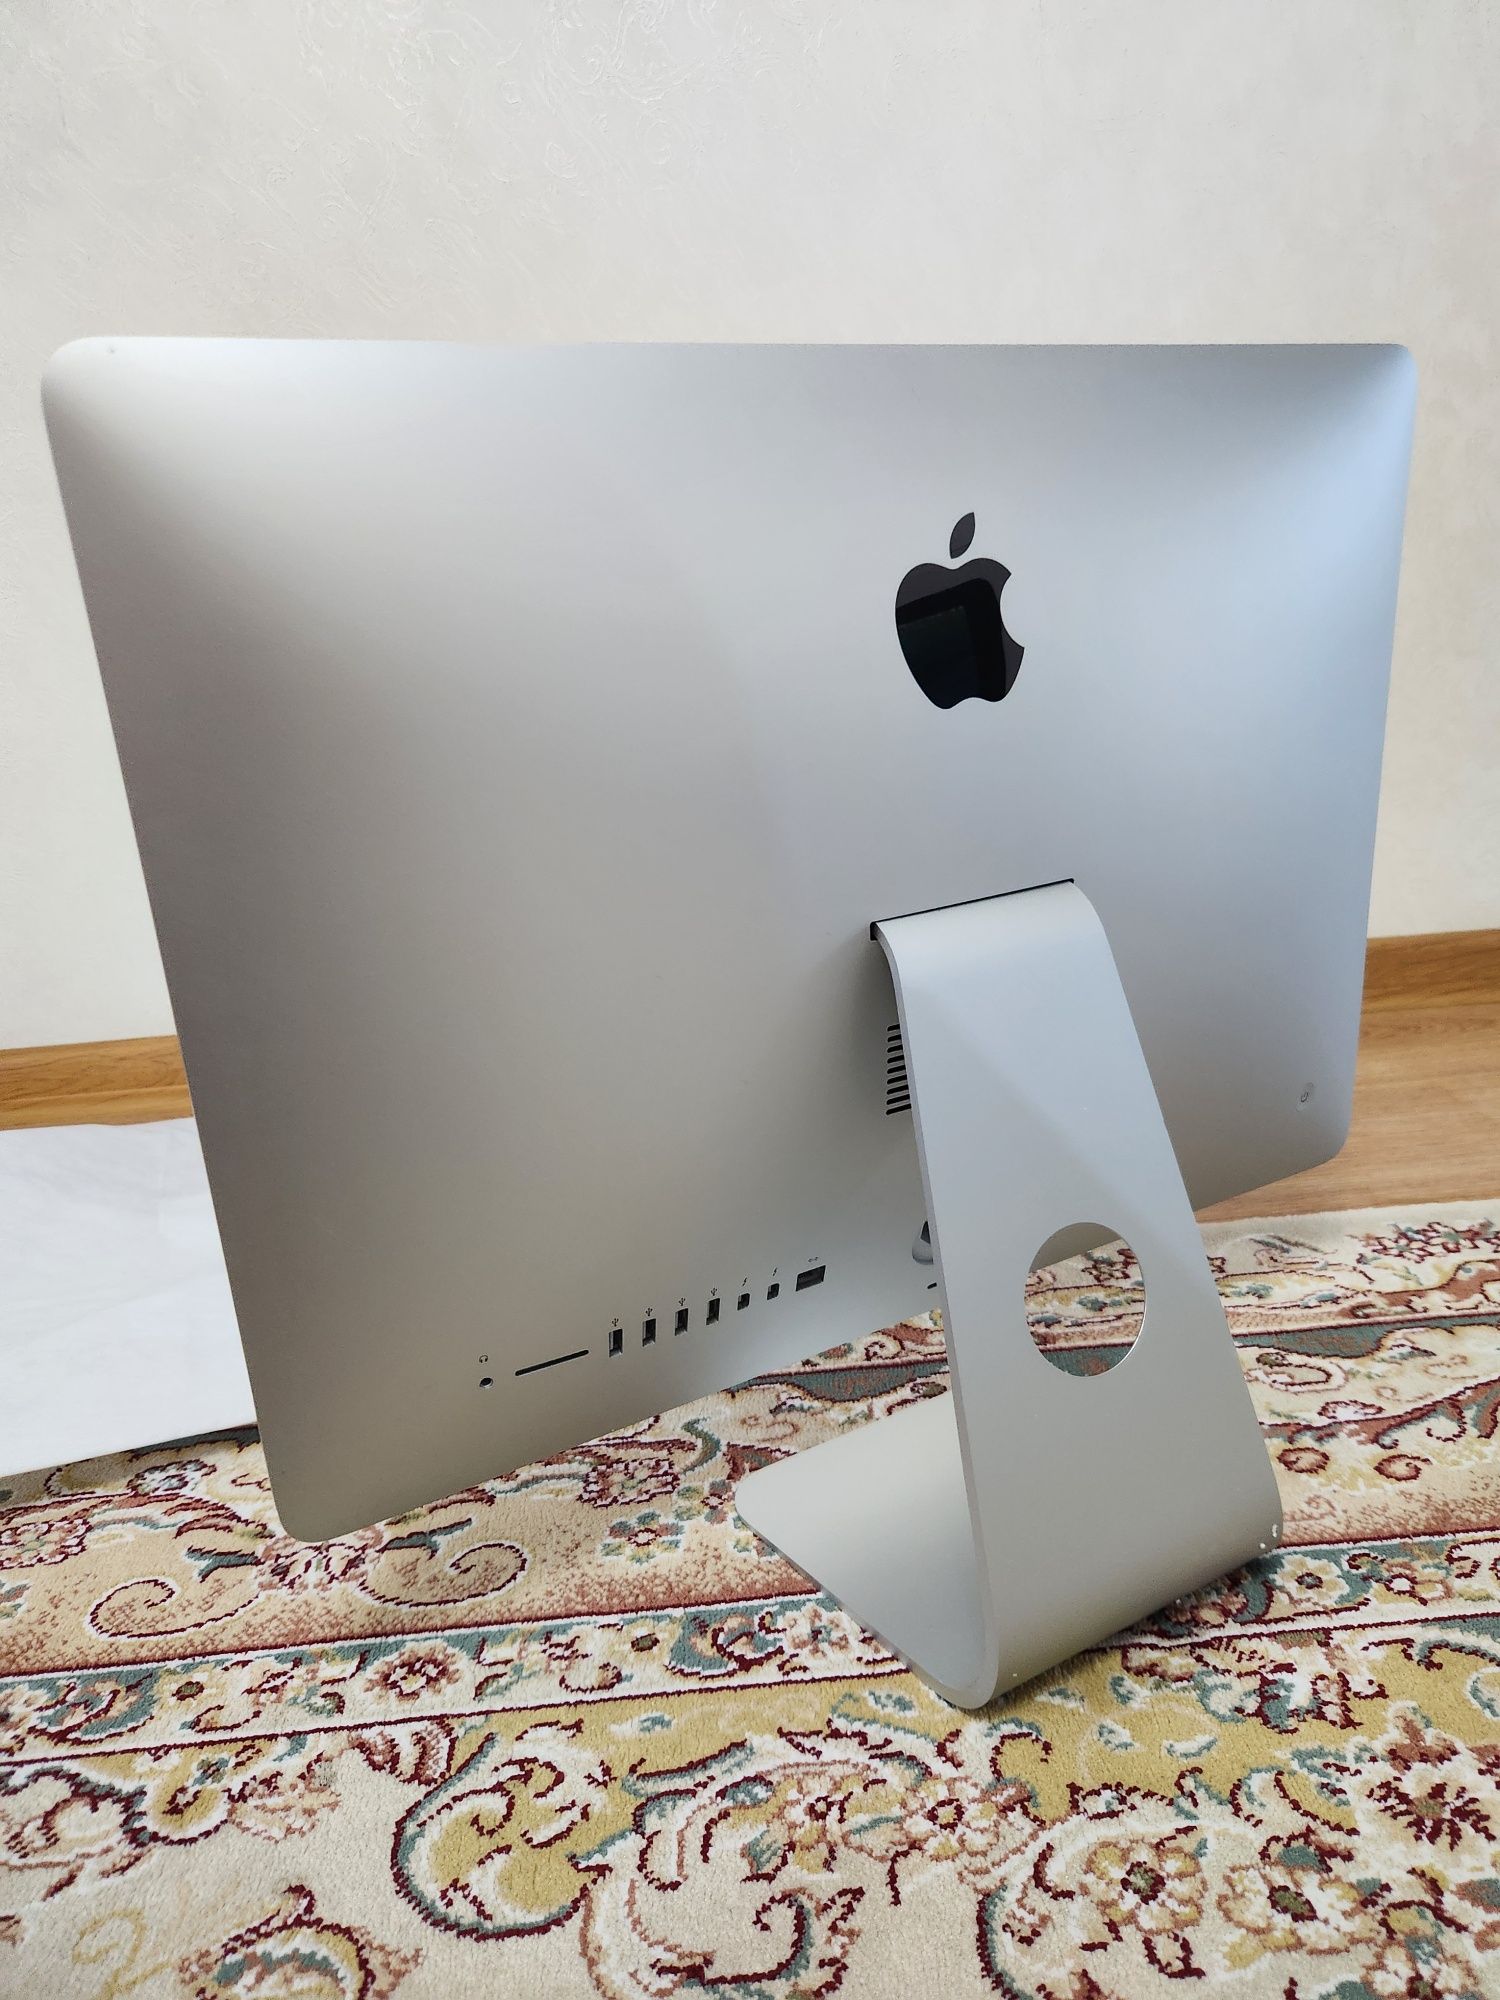 iMac 21.5 inch (2013)